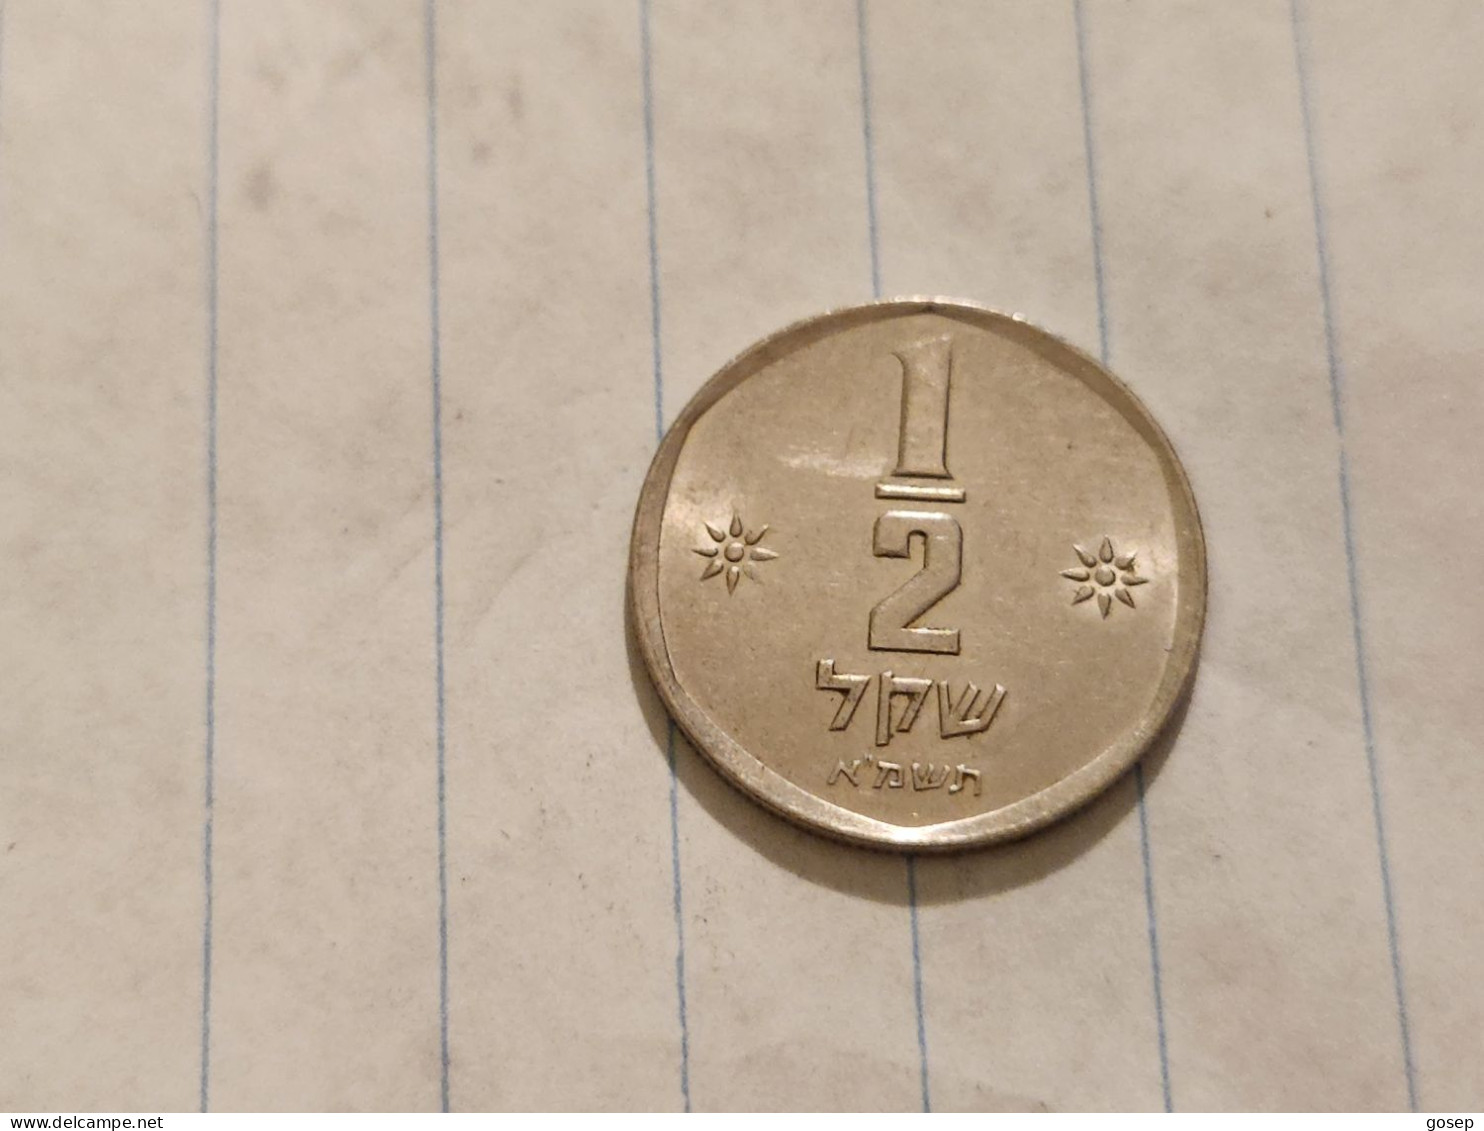 Israel-Coins-SHEKEL(1985-1981)-1/2 SHEKEL-Hapanka 32-(1981)-(25)-תשמ"א-NIKEL-good - Israele